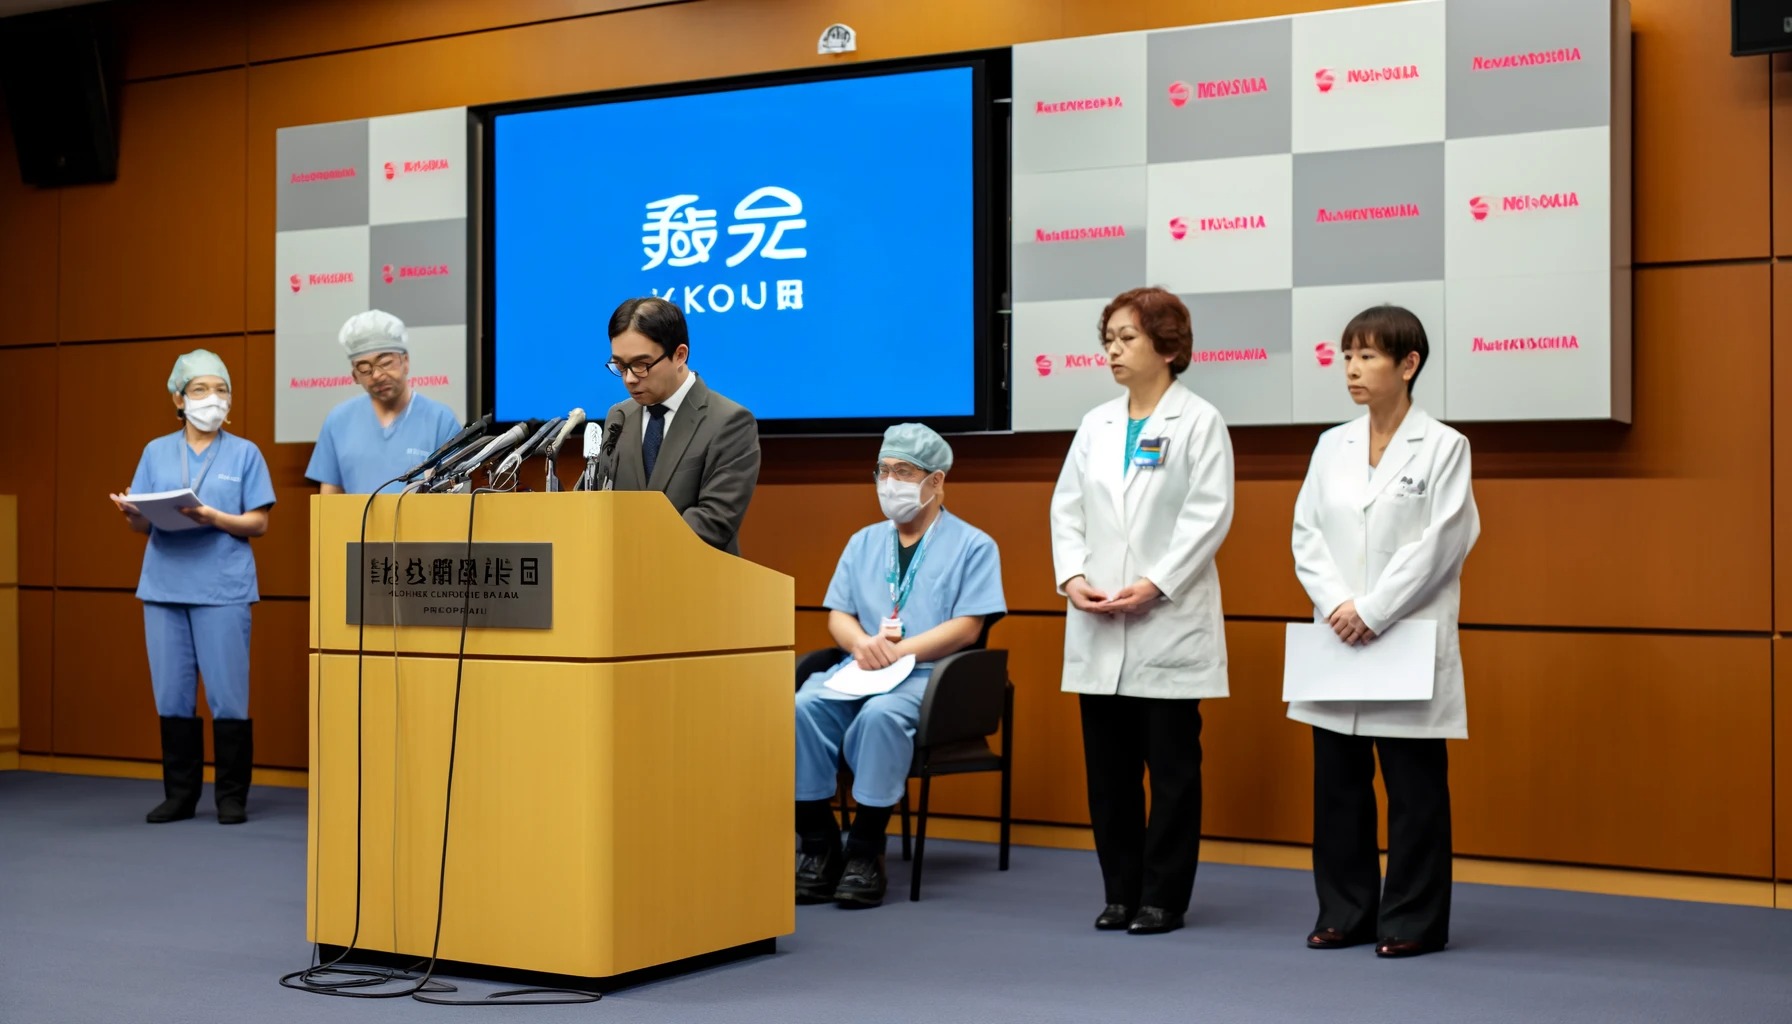 【朗報】脳外科医 竹田くんの勤め先、コメントを発表。「竹田くんのお陰で当院の救急医療のレベルが向上した」